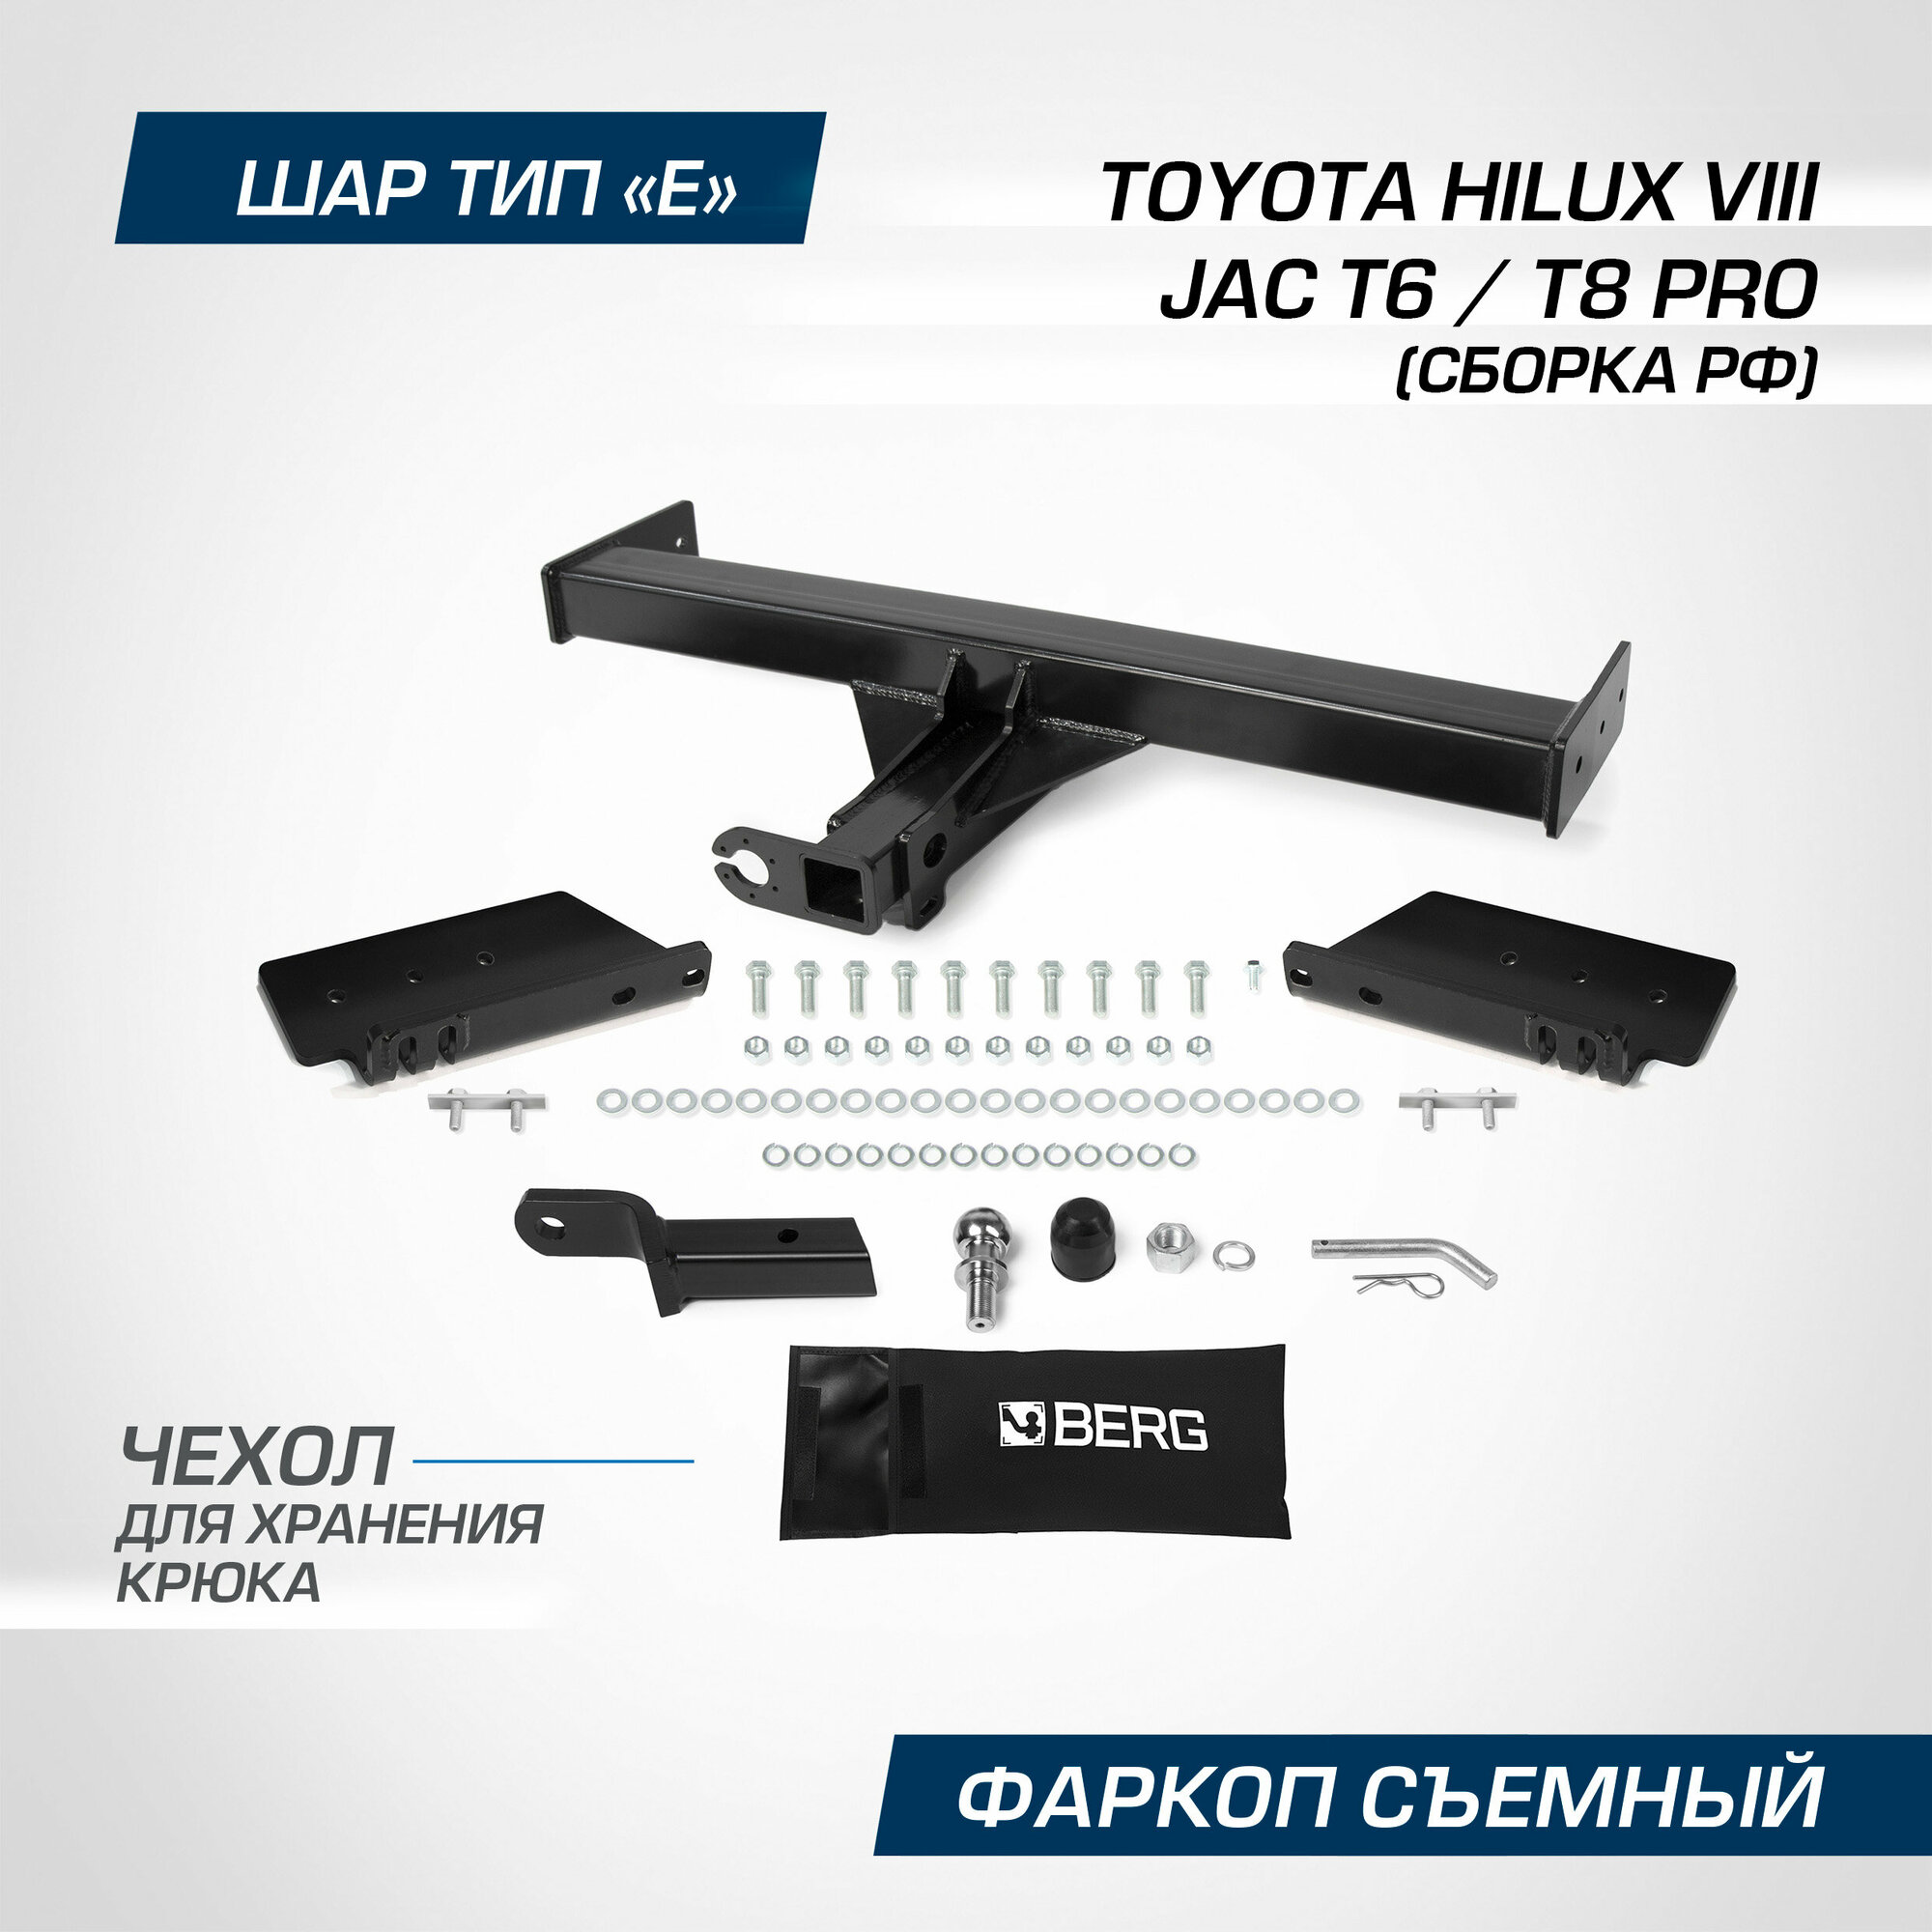 Фаркоп под квадрат Berg для Toyota Hilux (Тойота Хайлюкс) VIII поколение 2015-2020 2020-н. в шар E 3500/120 кг F.5718.001